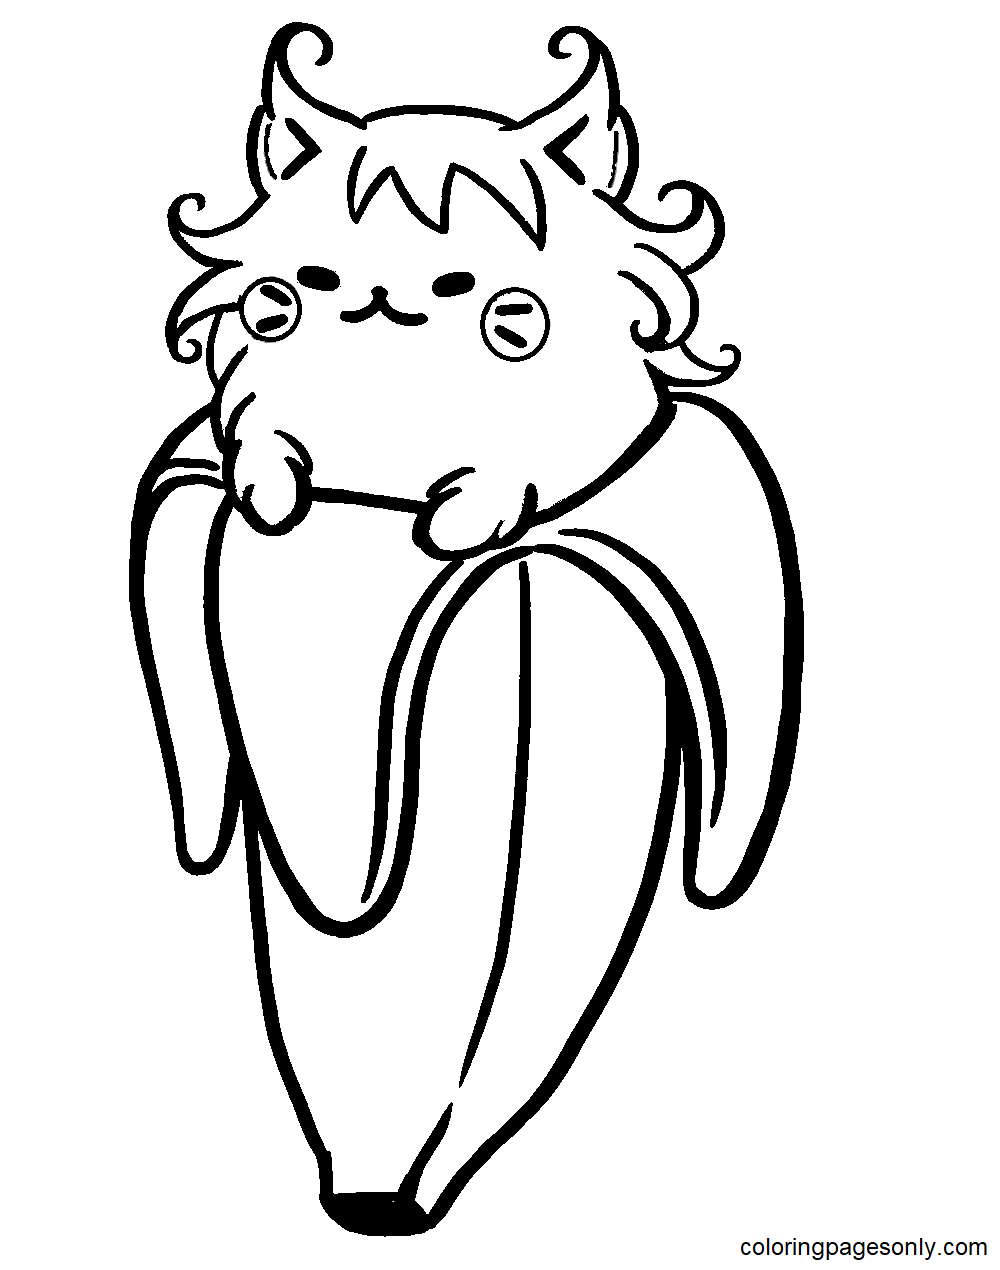 Cute Vampire Bananya Coloring Page